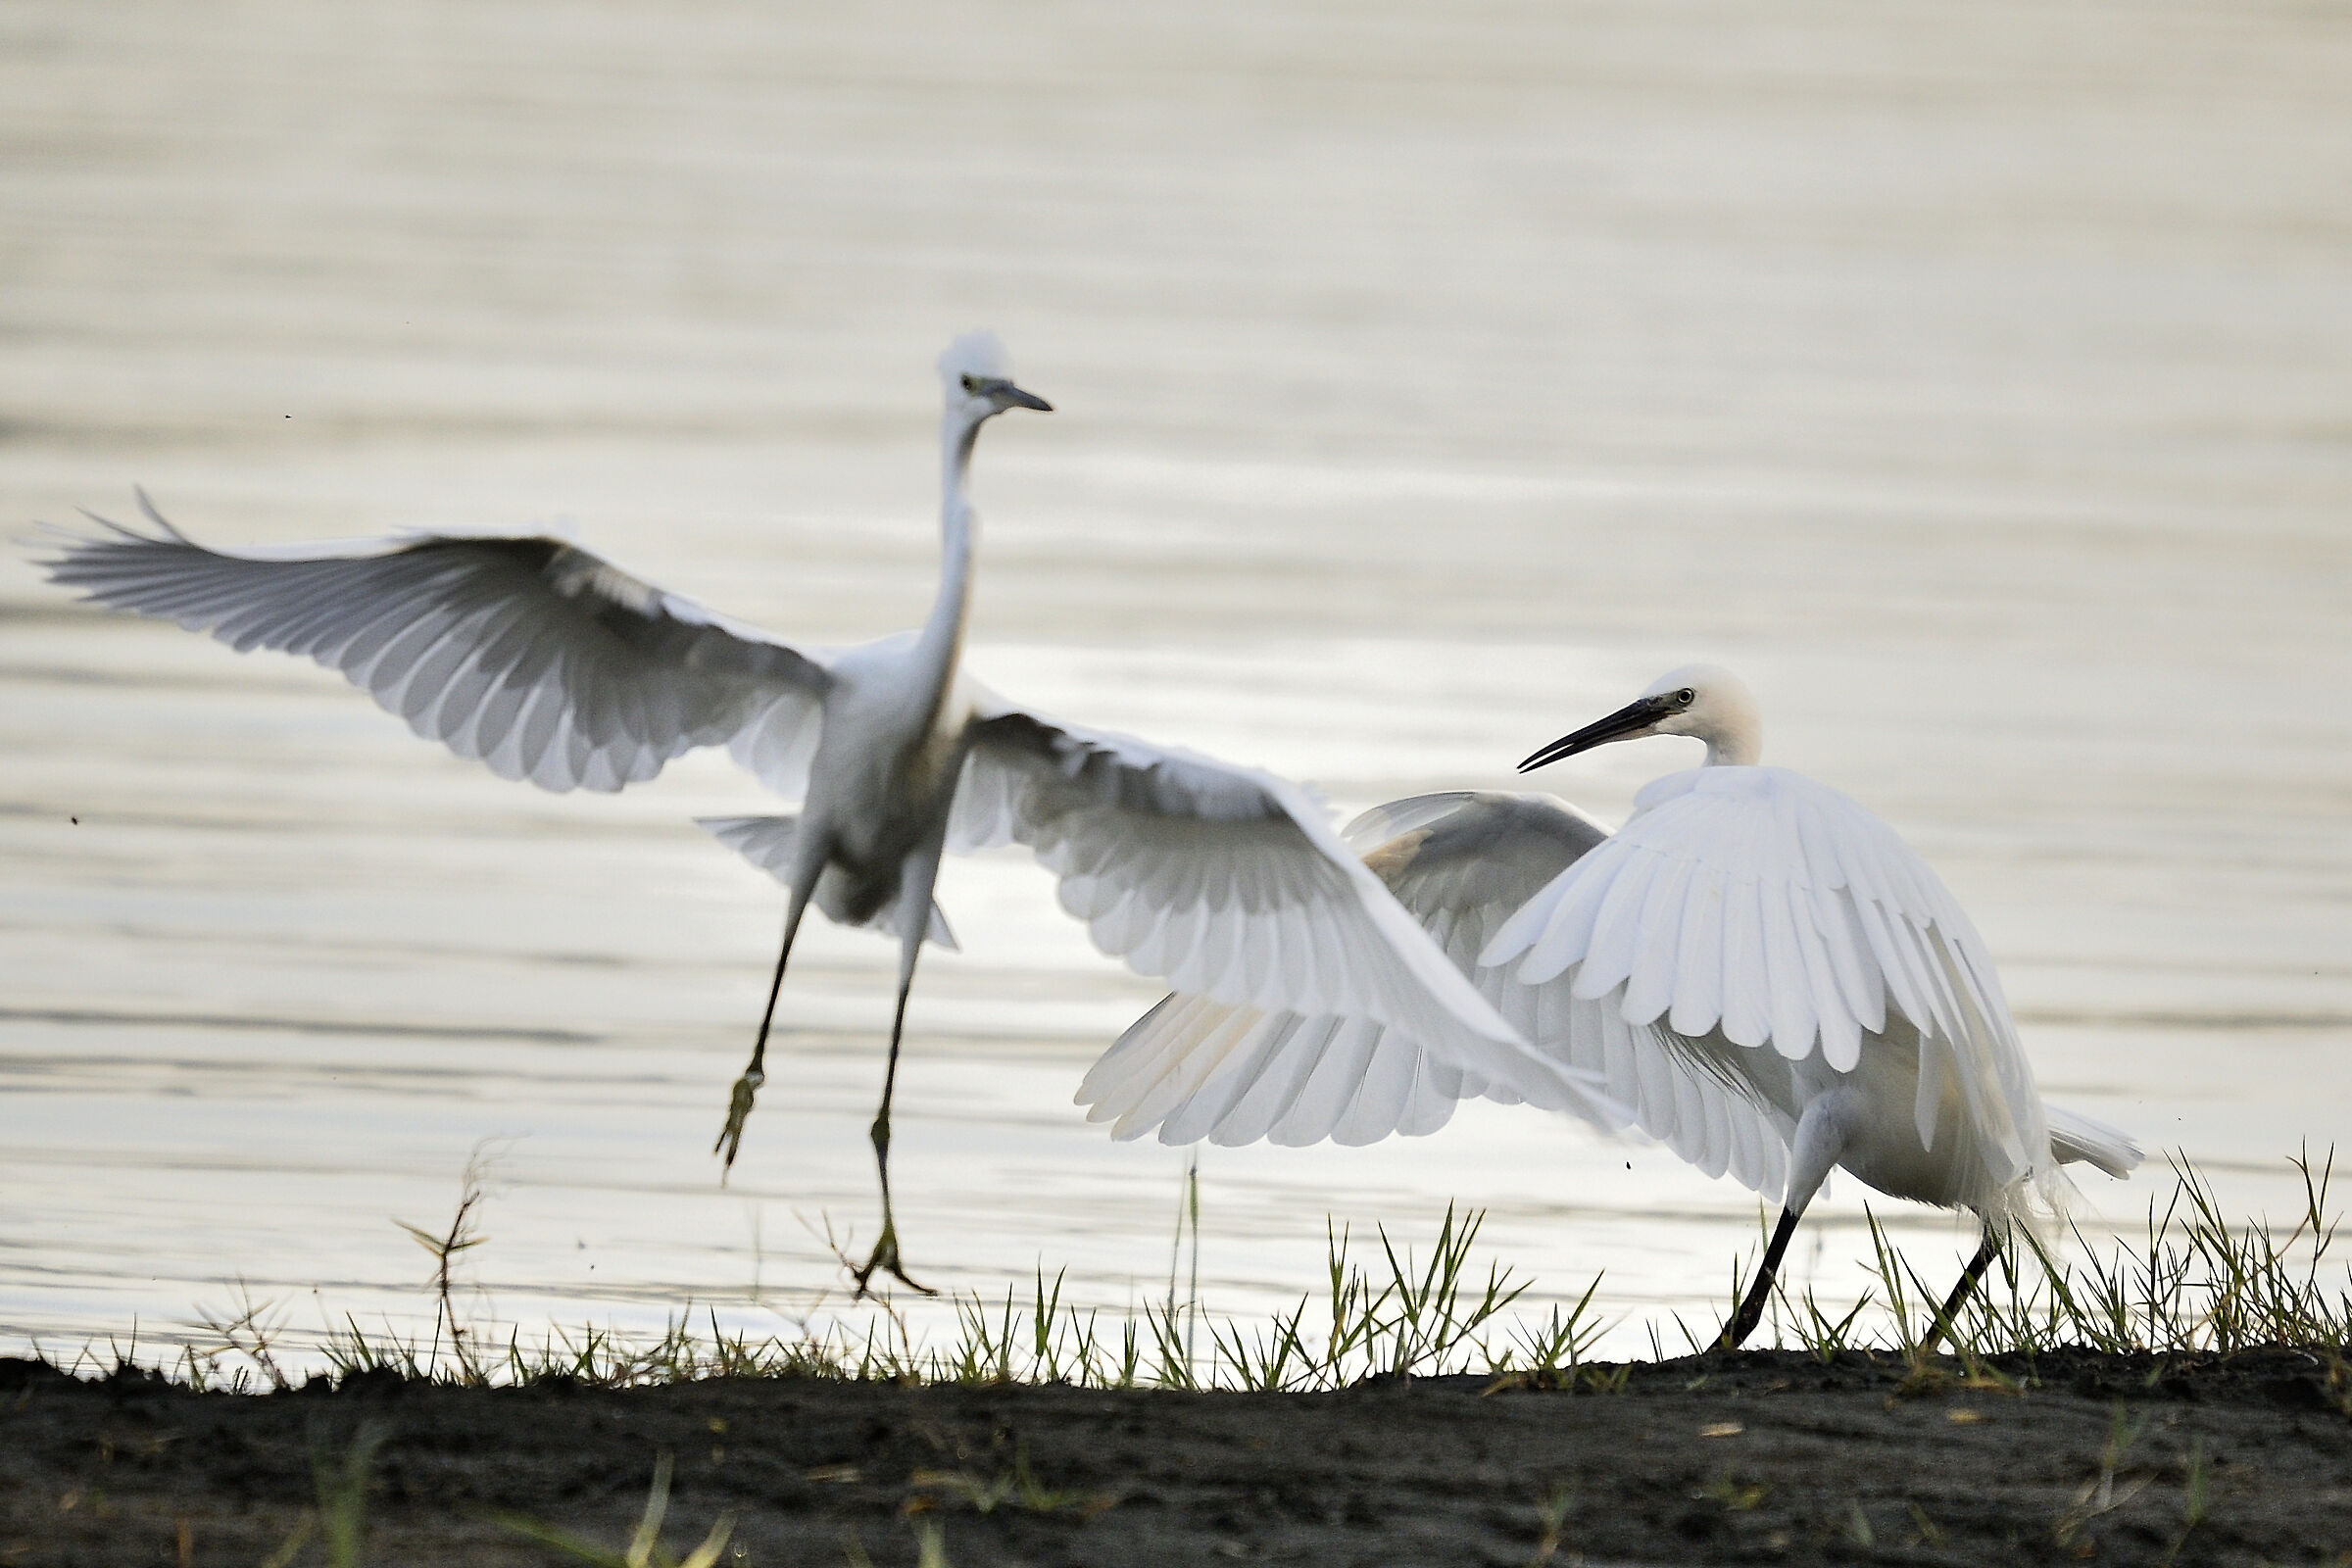 morning dance between egrets...